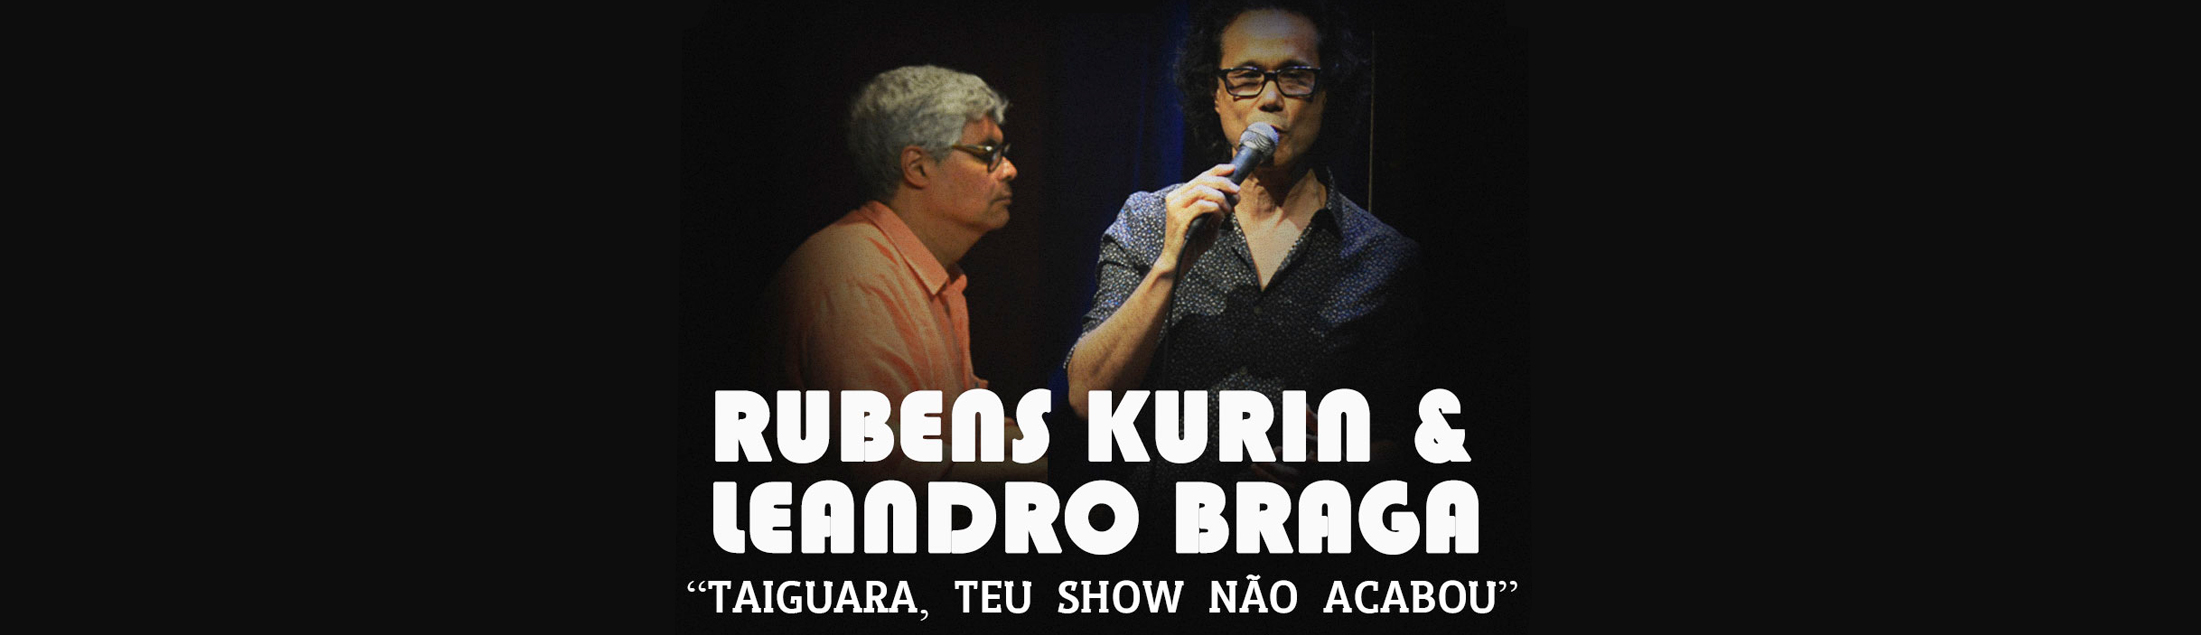 Taiguara, Teu Sonho Não Acabou, com Rubens Kurin e Leandro Braga no Teatro Rival